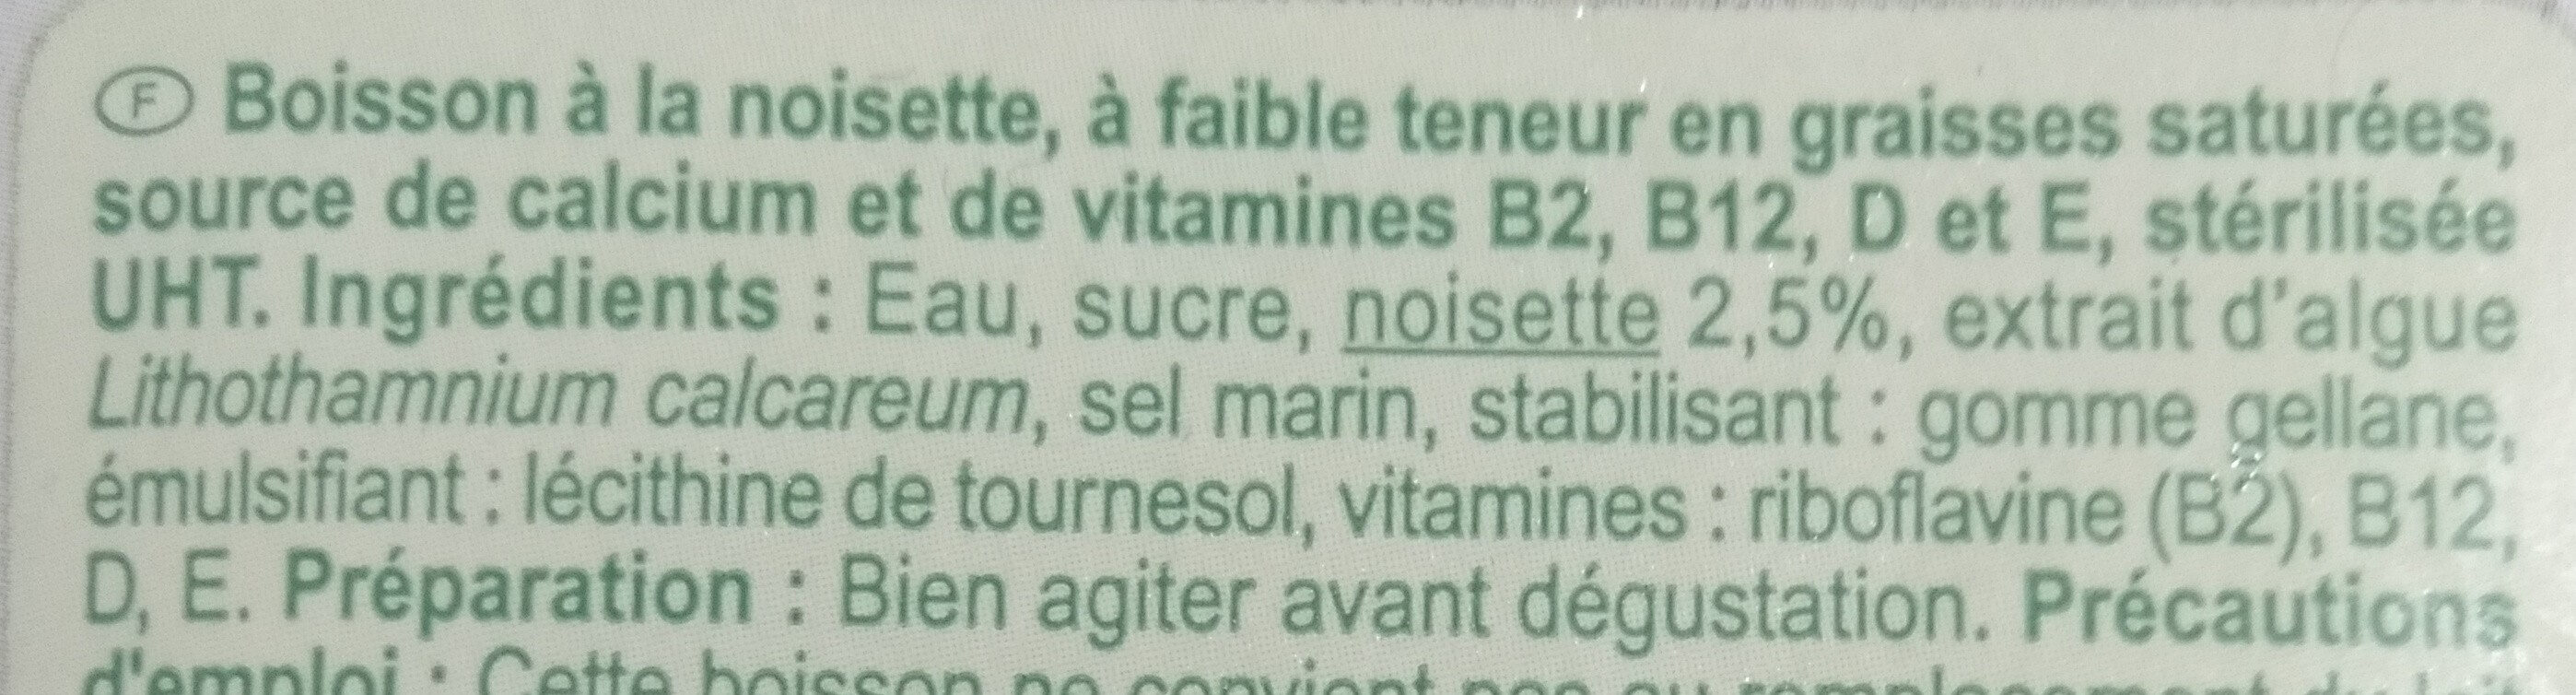 Noisette végétal - Ingredients - fr